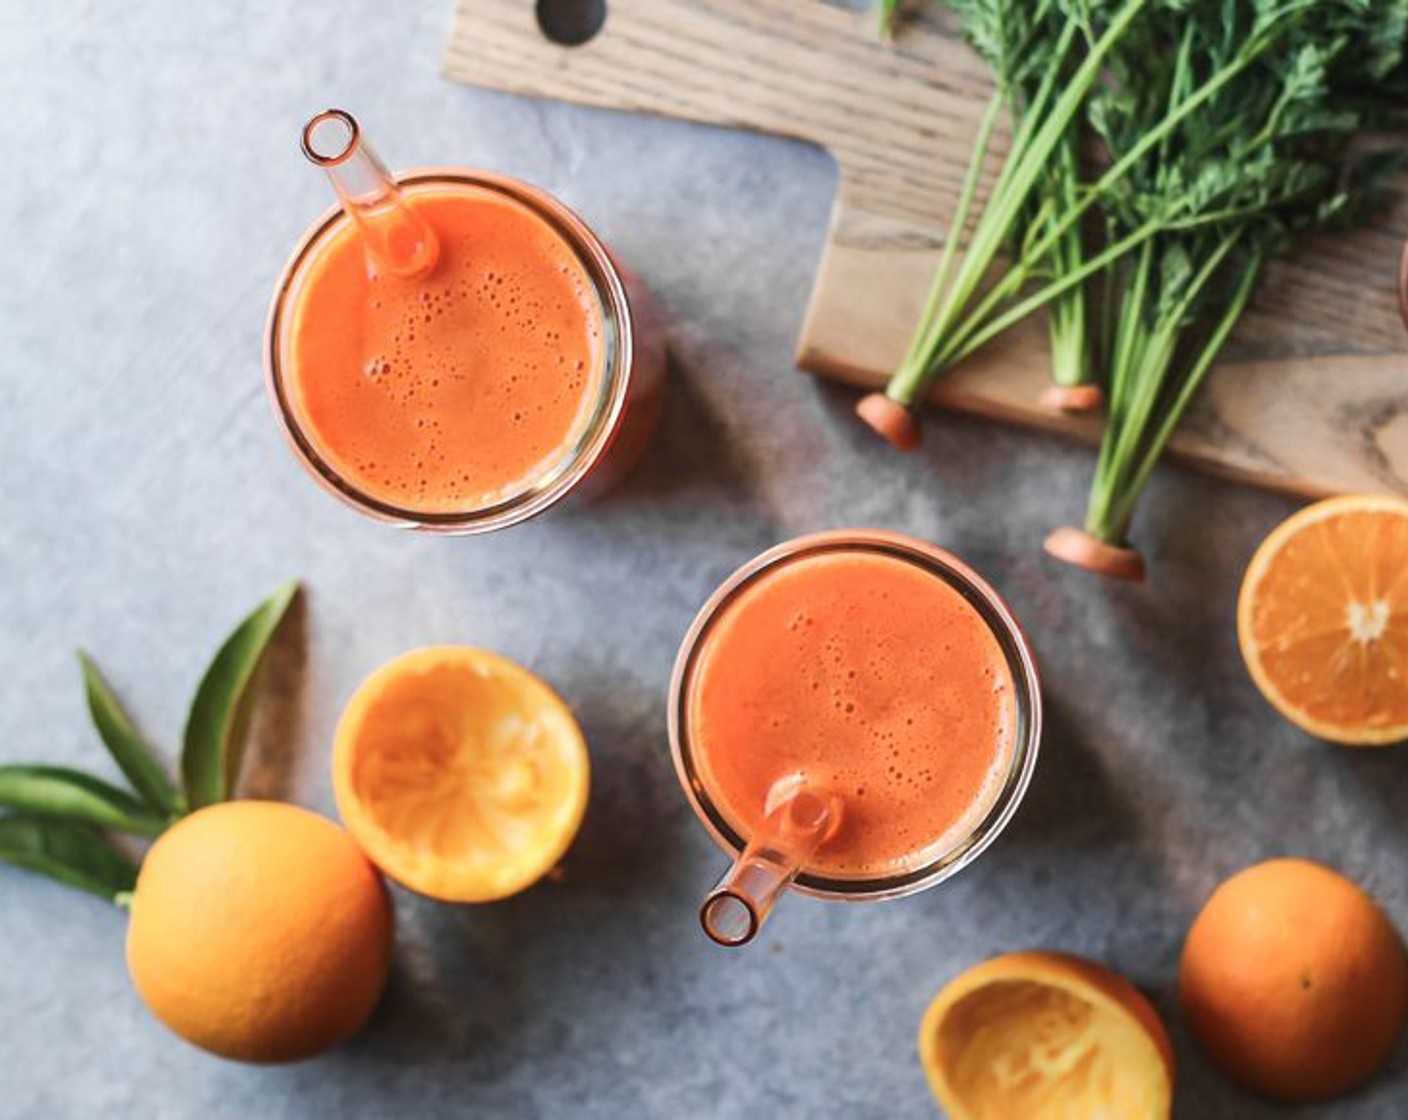 Schritt 3 Den Karotten-Ingwer-Saft und den Orangensaft in ein grosses Glas oder zwei kleinere Gläser füllen und direkt geniessen!